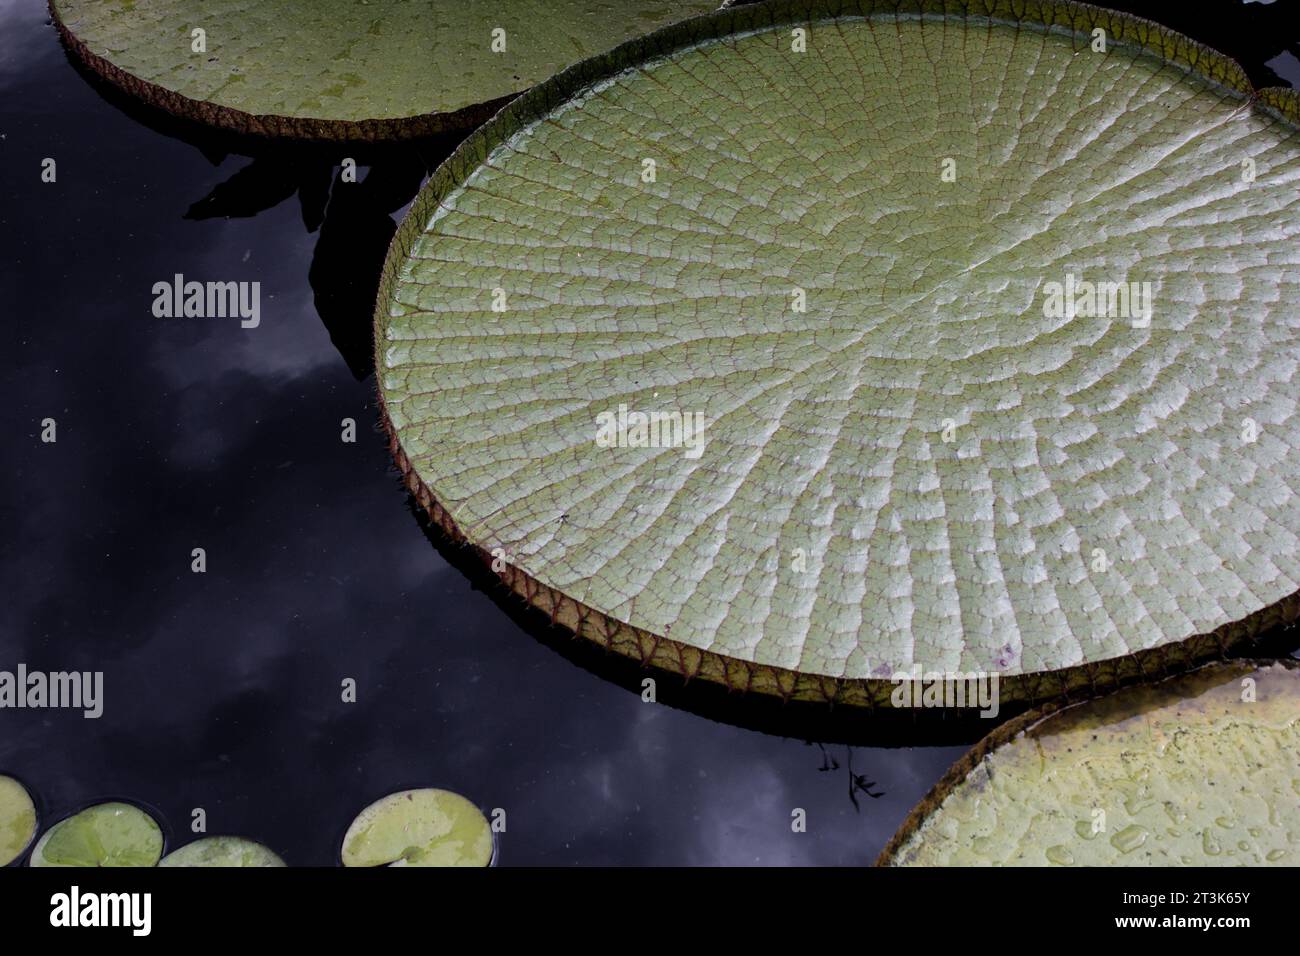 Lilly cojines flotando en un estanque limpio completamente quieto con nubes reflejándose en la superficie. El ambiente filtrado por plantas de agua. Foto de stock